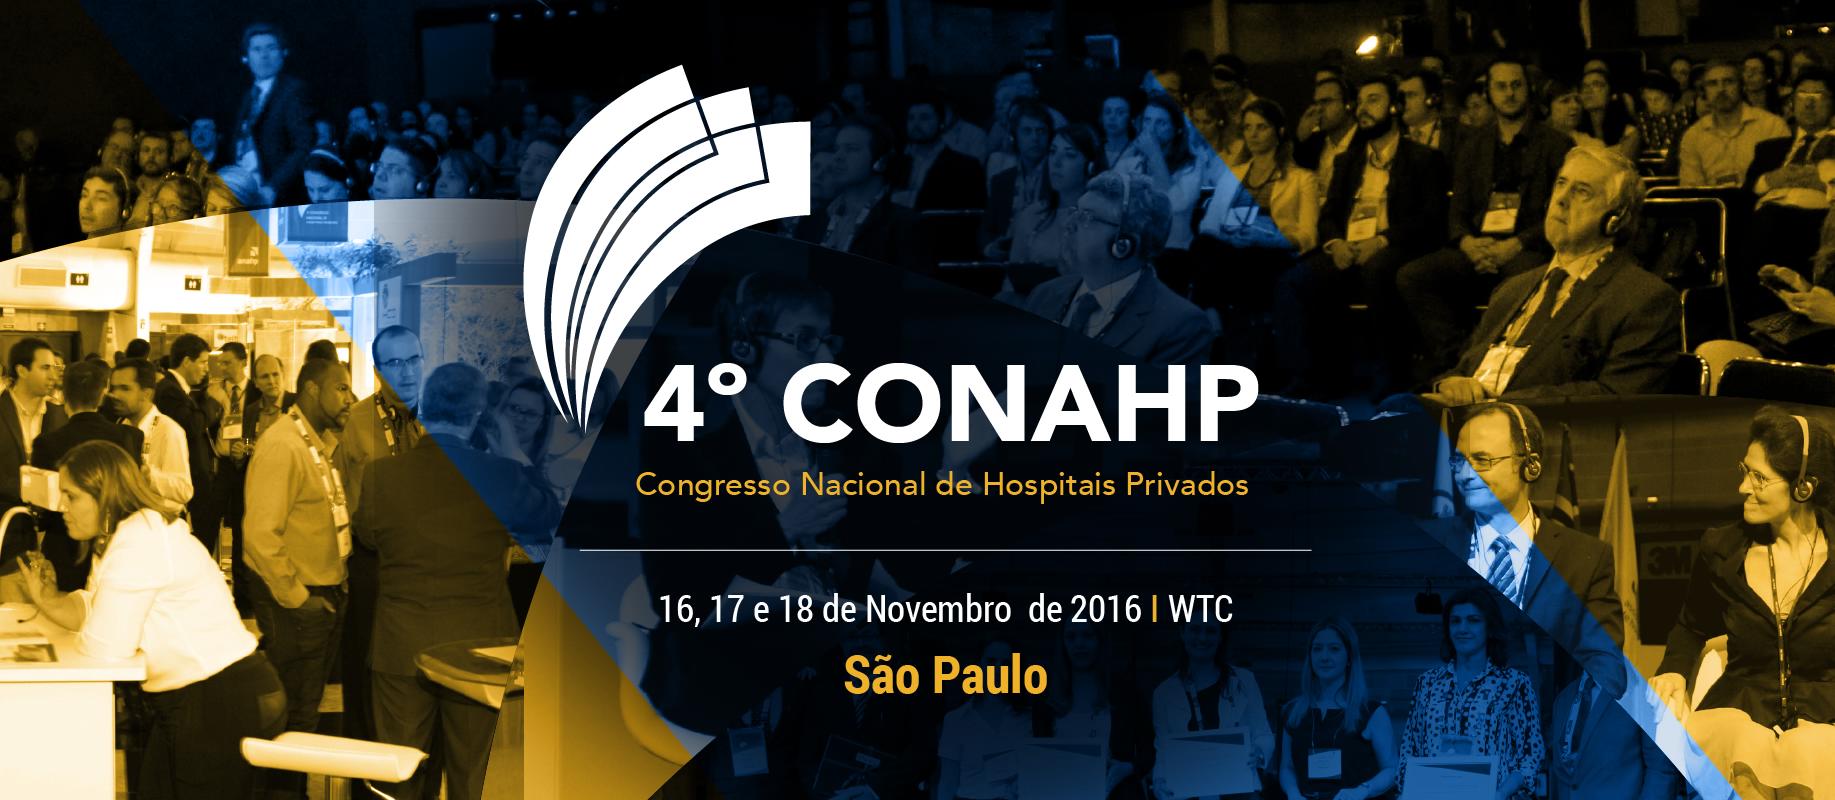 4º Congresso Nacional de Hospitais Privados - 16, 17 a 18 de Novembro de 2016 - São Paulo / SP | WTC 